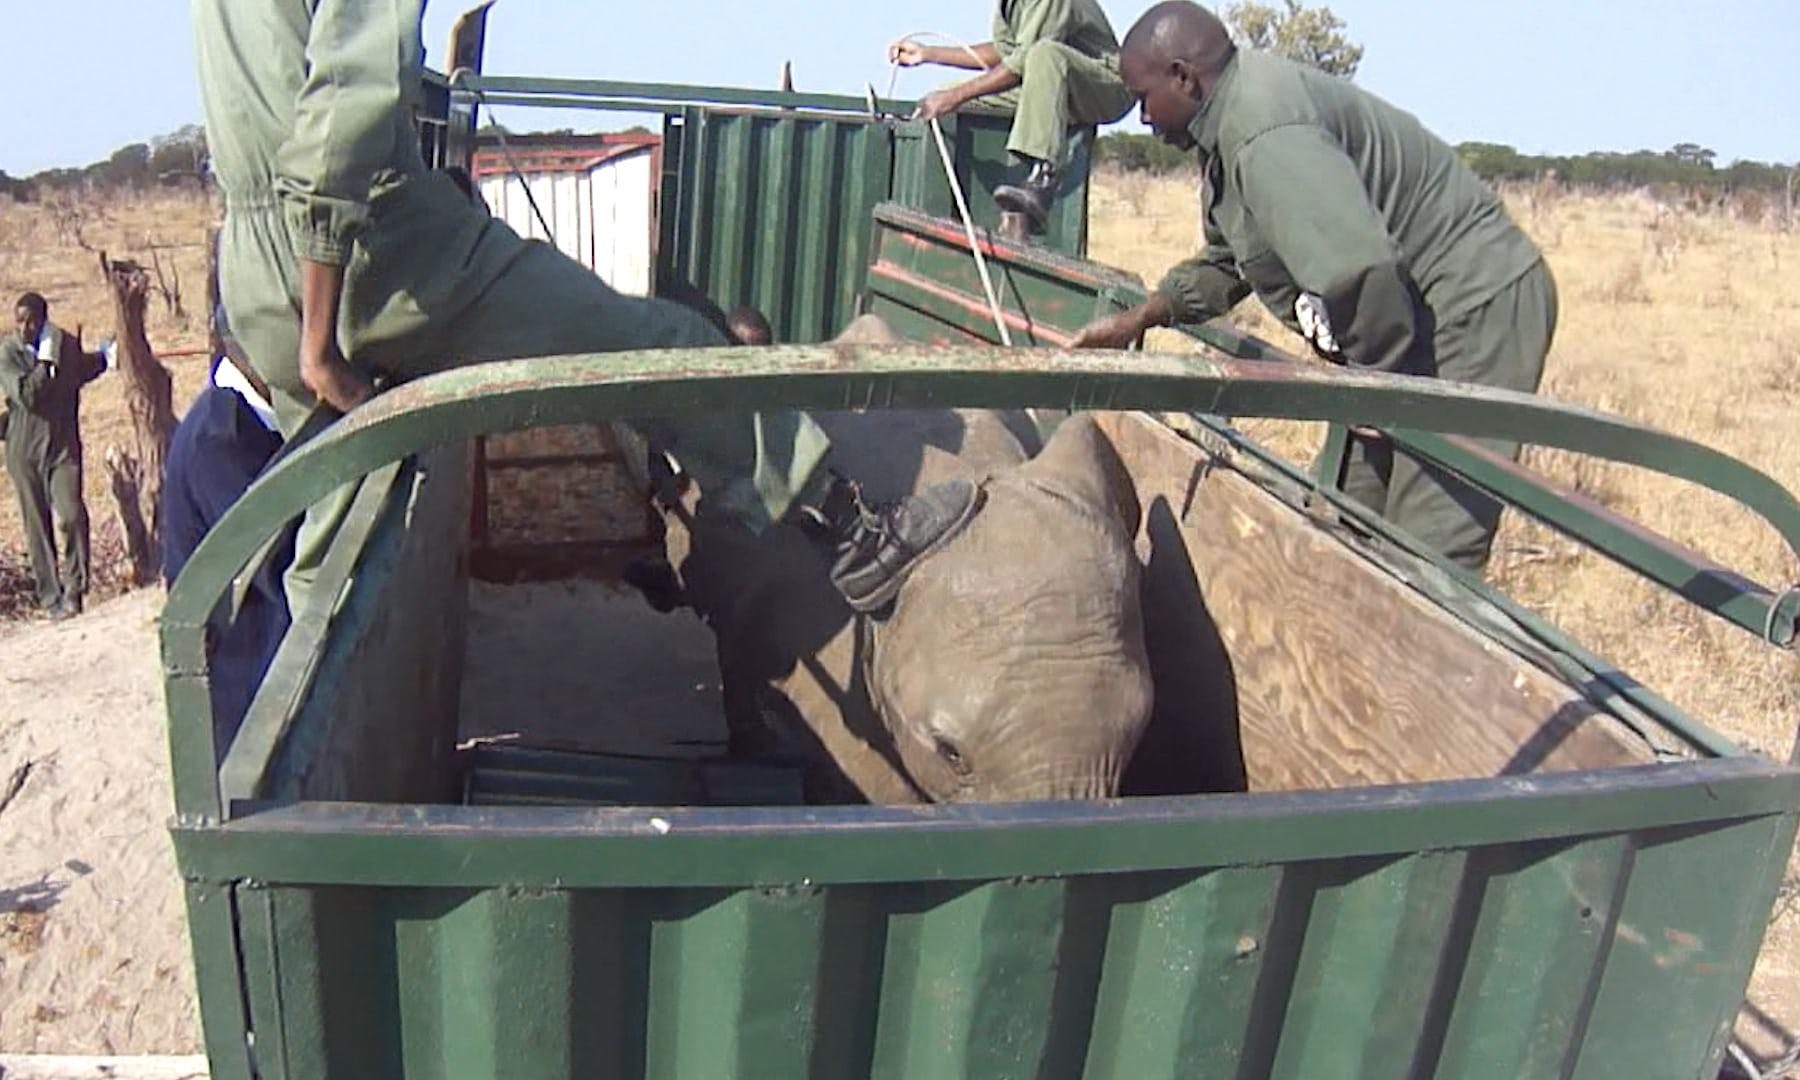 Βίντεο καταγράφει την σκληρή διαδικασία αιχμαλωσίας νεαρών ελεφάντων ώστε να μεταφερθούν σε ζωολογικούς κήπους